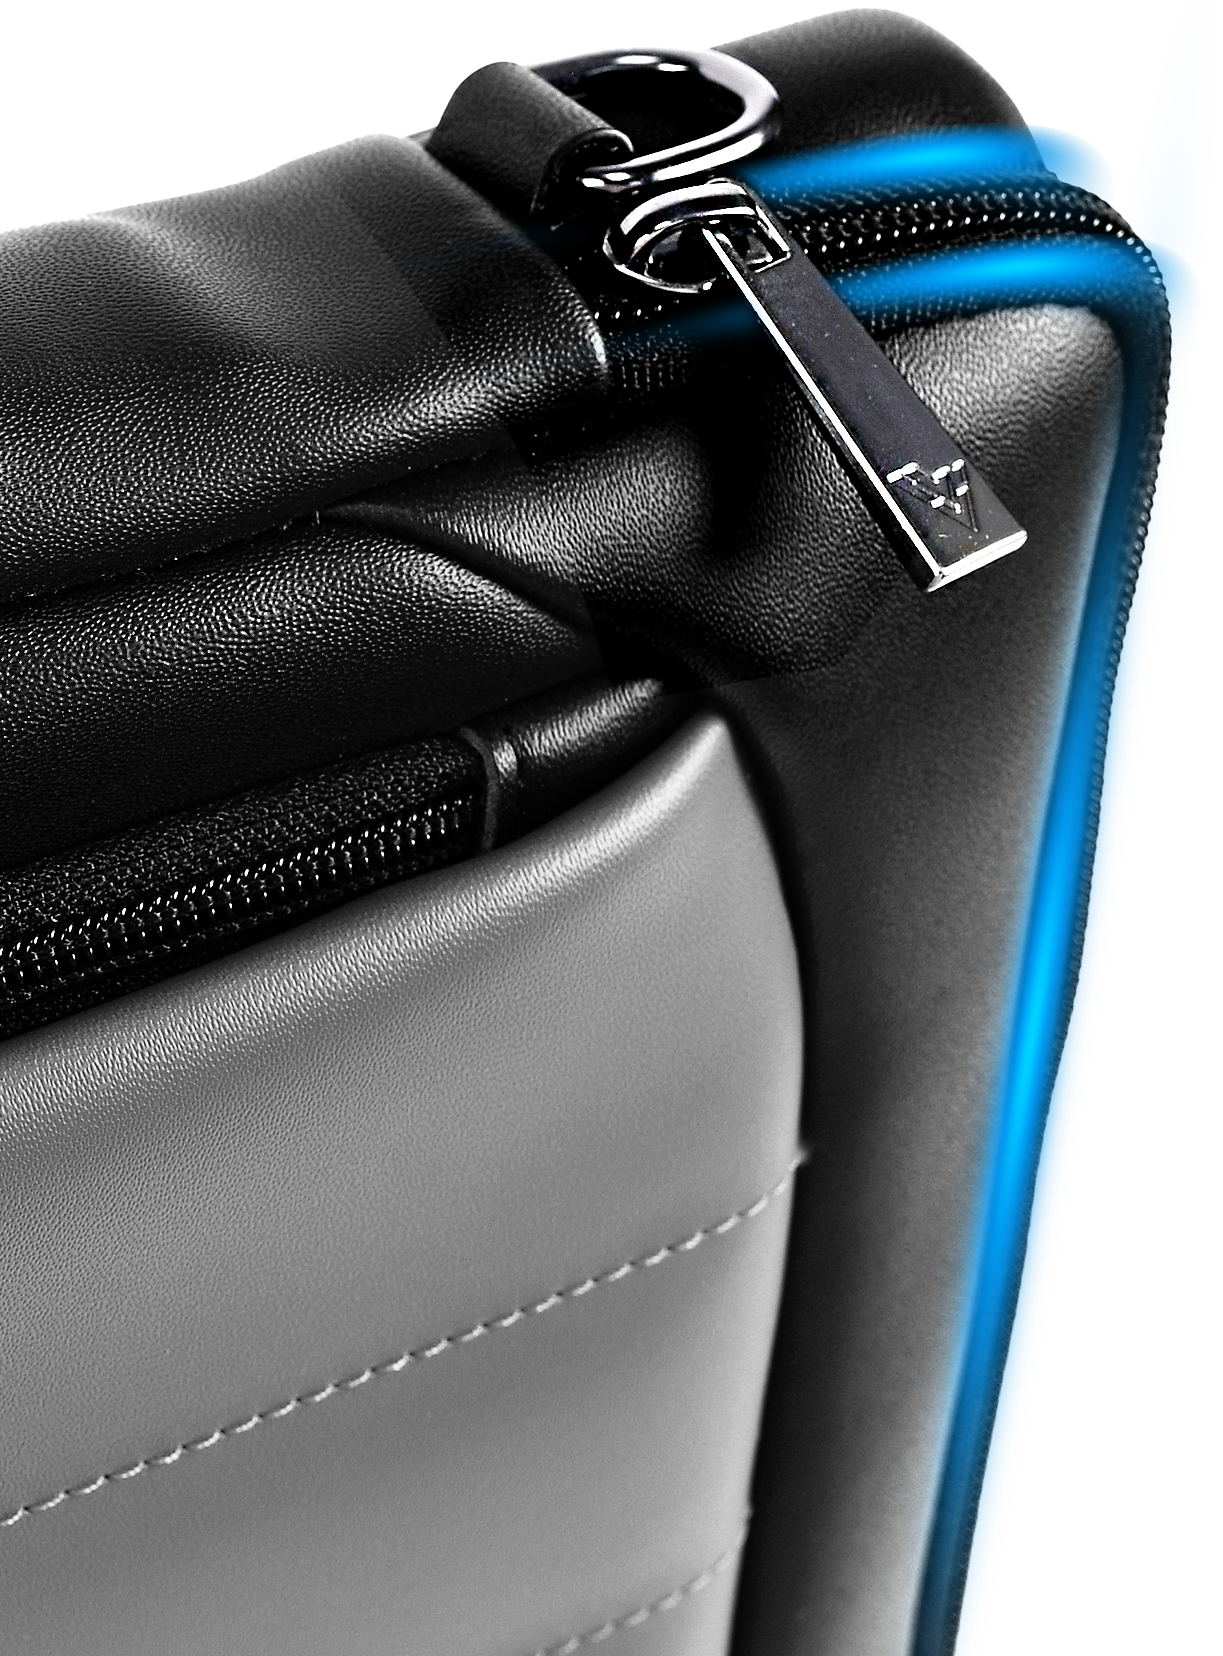 Vaku Luxos ®️ Lasa Chivelle 14 inch laptop Bag Premium Laptop